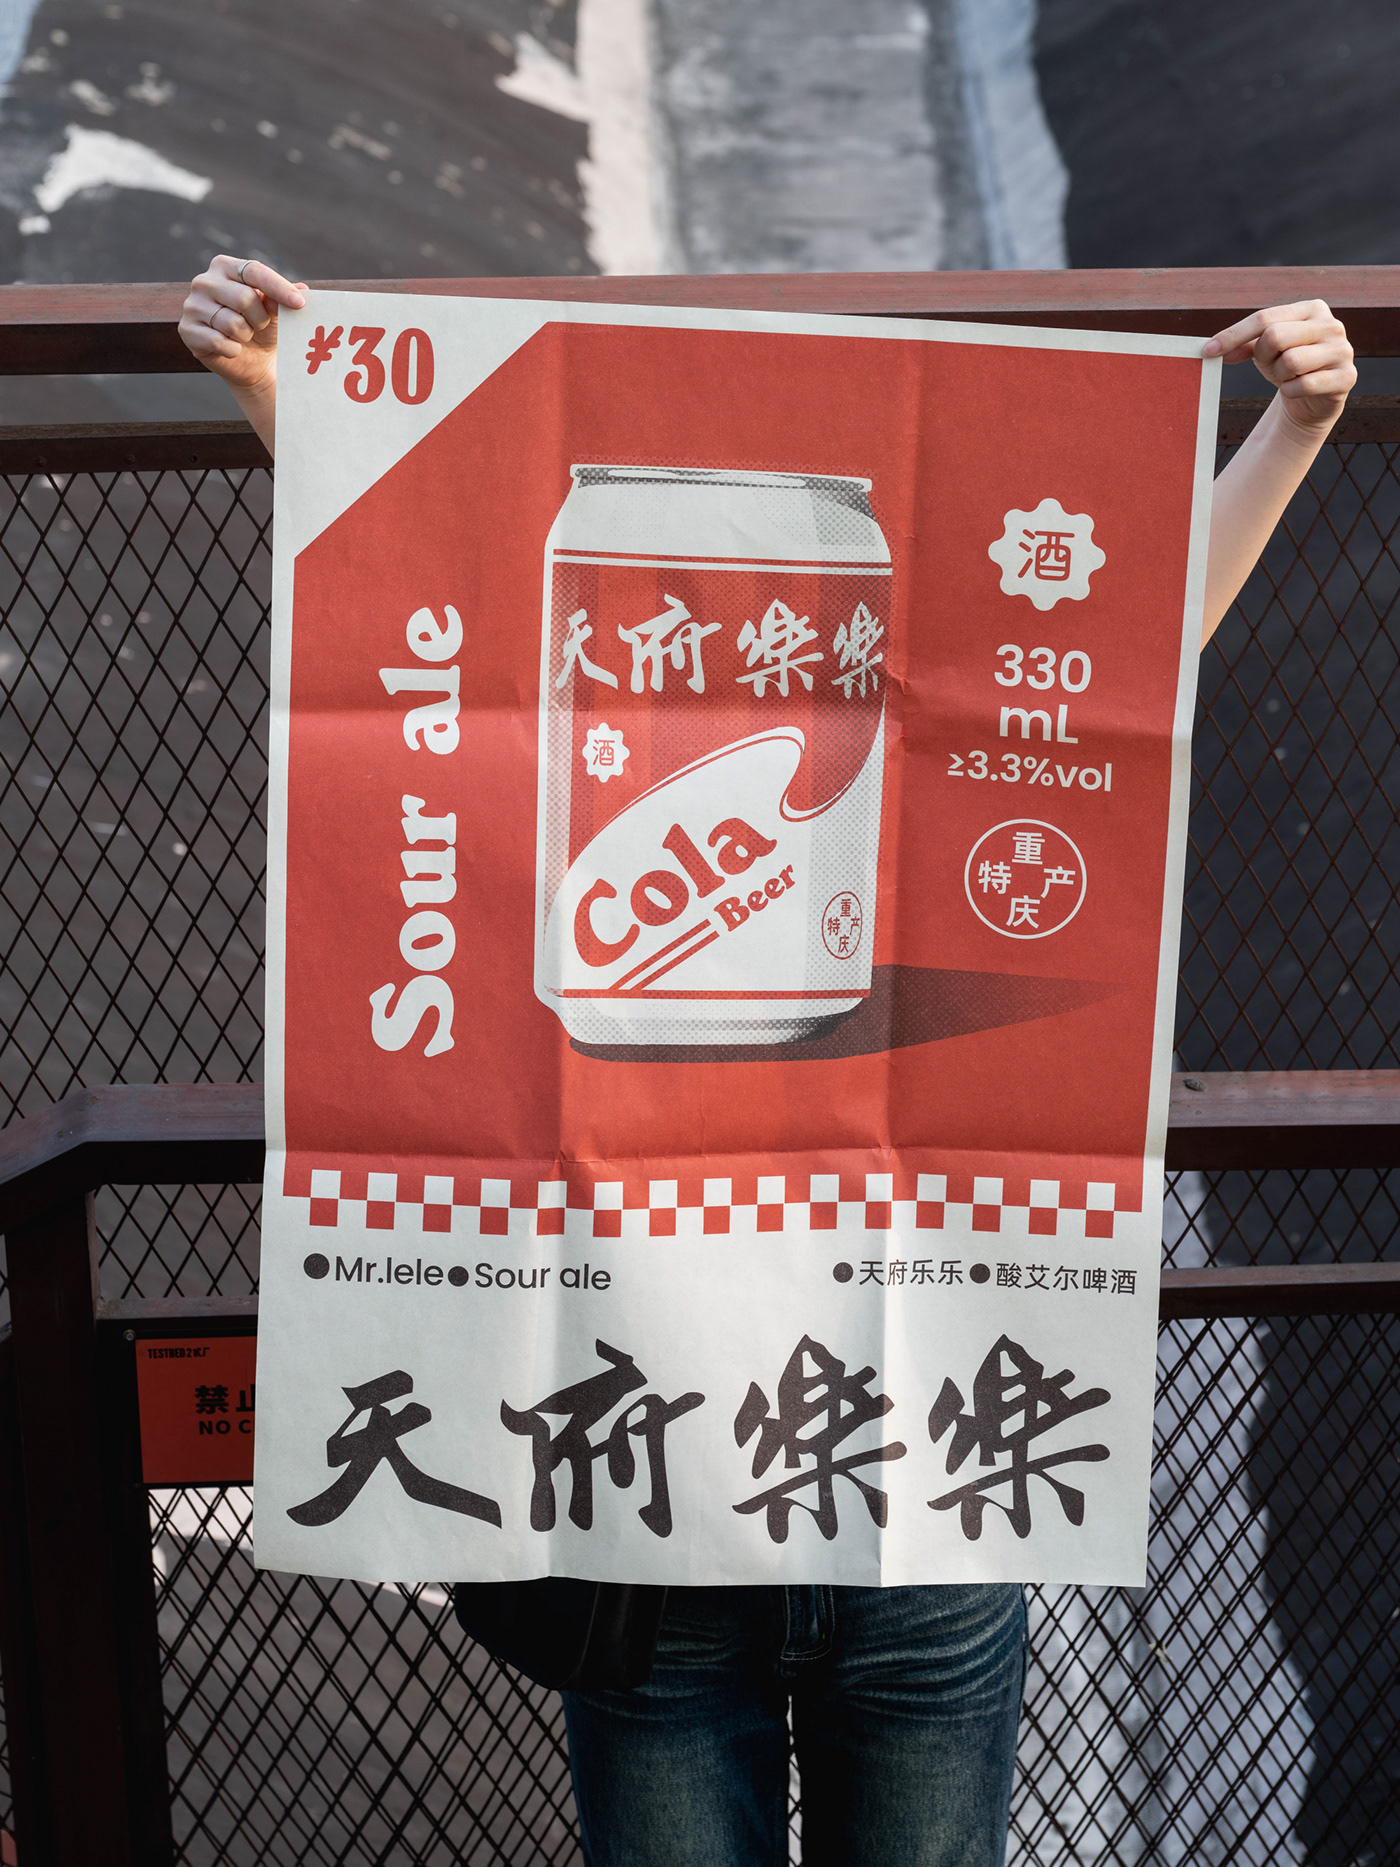 cola beer hops Packaging